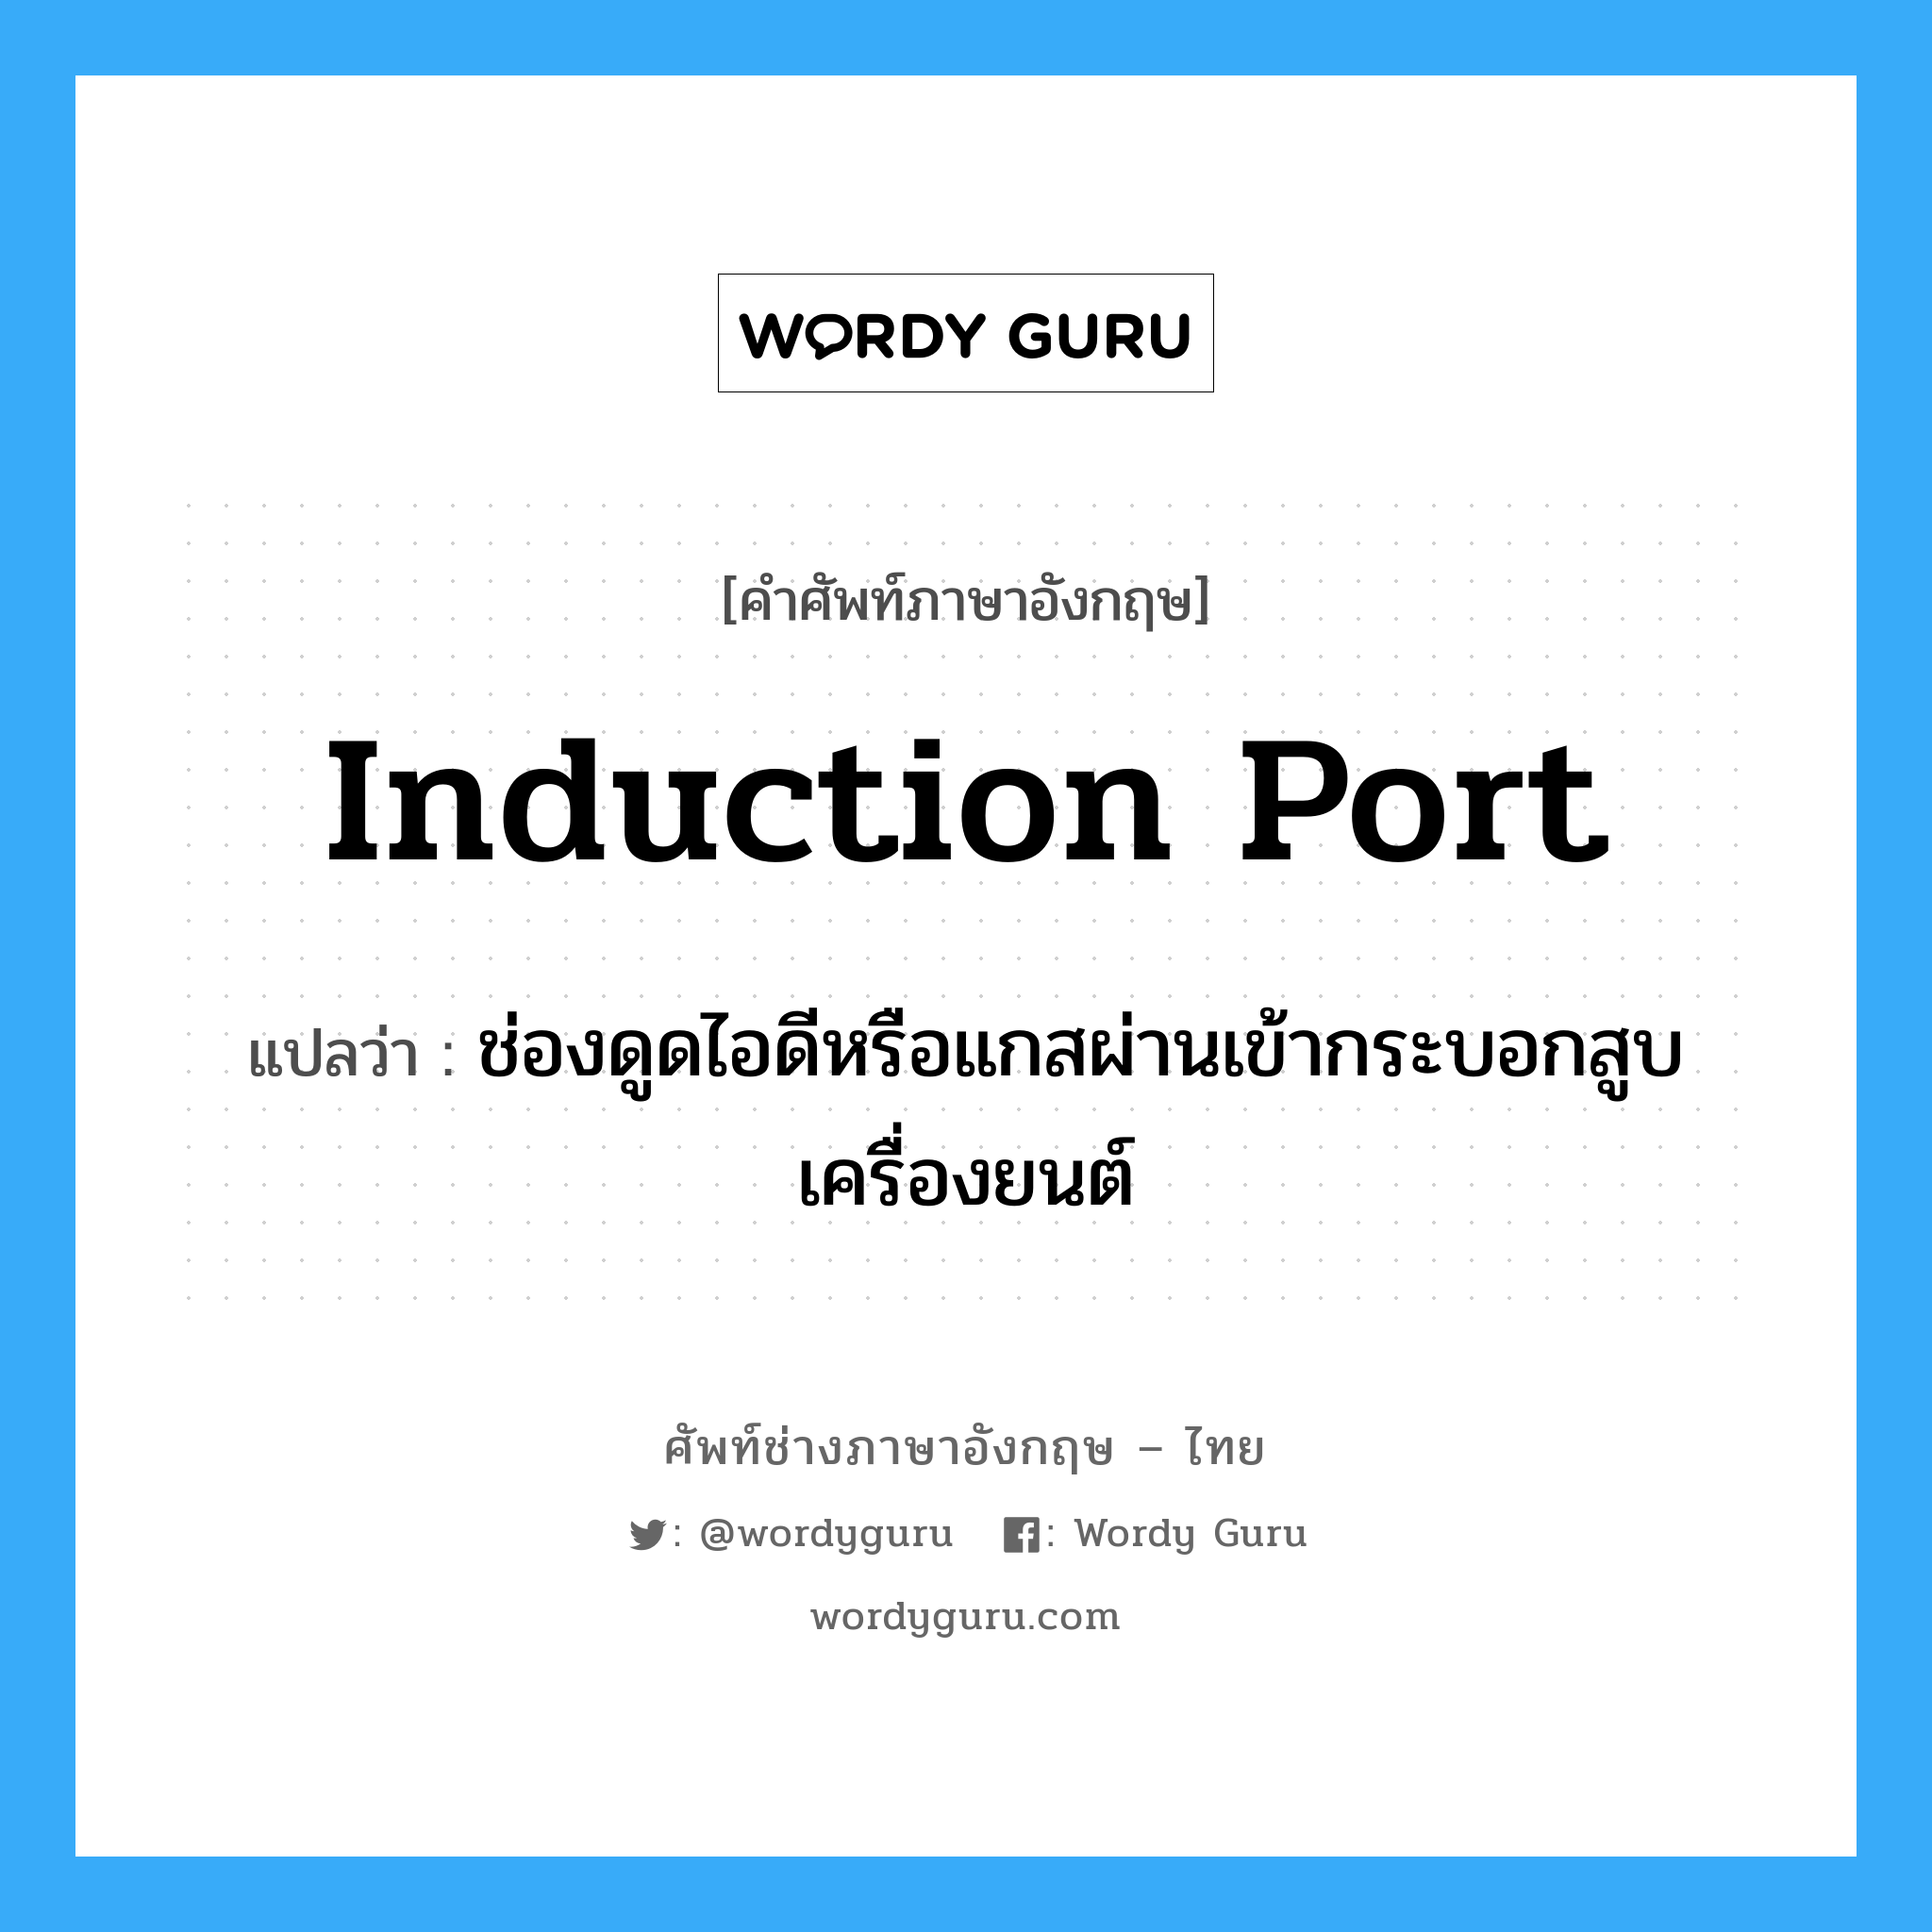 induction port แปลว่า?, คำศัพท์ช่างภาษาอังกฤษ - ไทย induction port คำศัพท์ภาษาอังกฤษ induction port แปลว่า ช่องดูดไอดีหรือแกสผ่านเข้ากระบอกสูบเครื่องยนต์